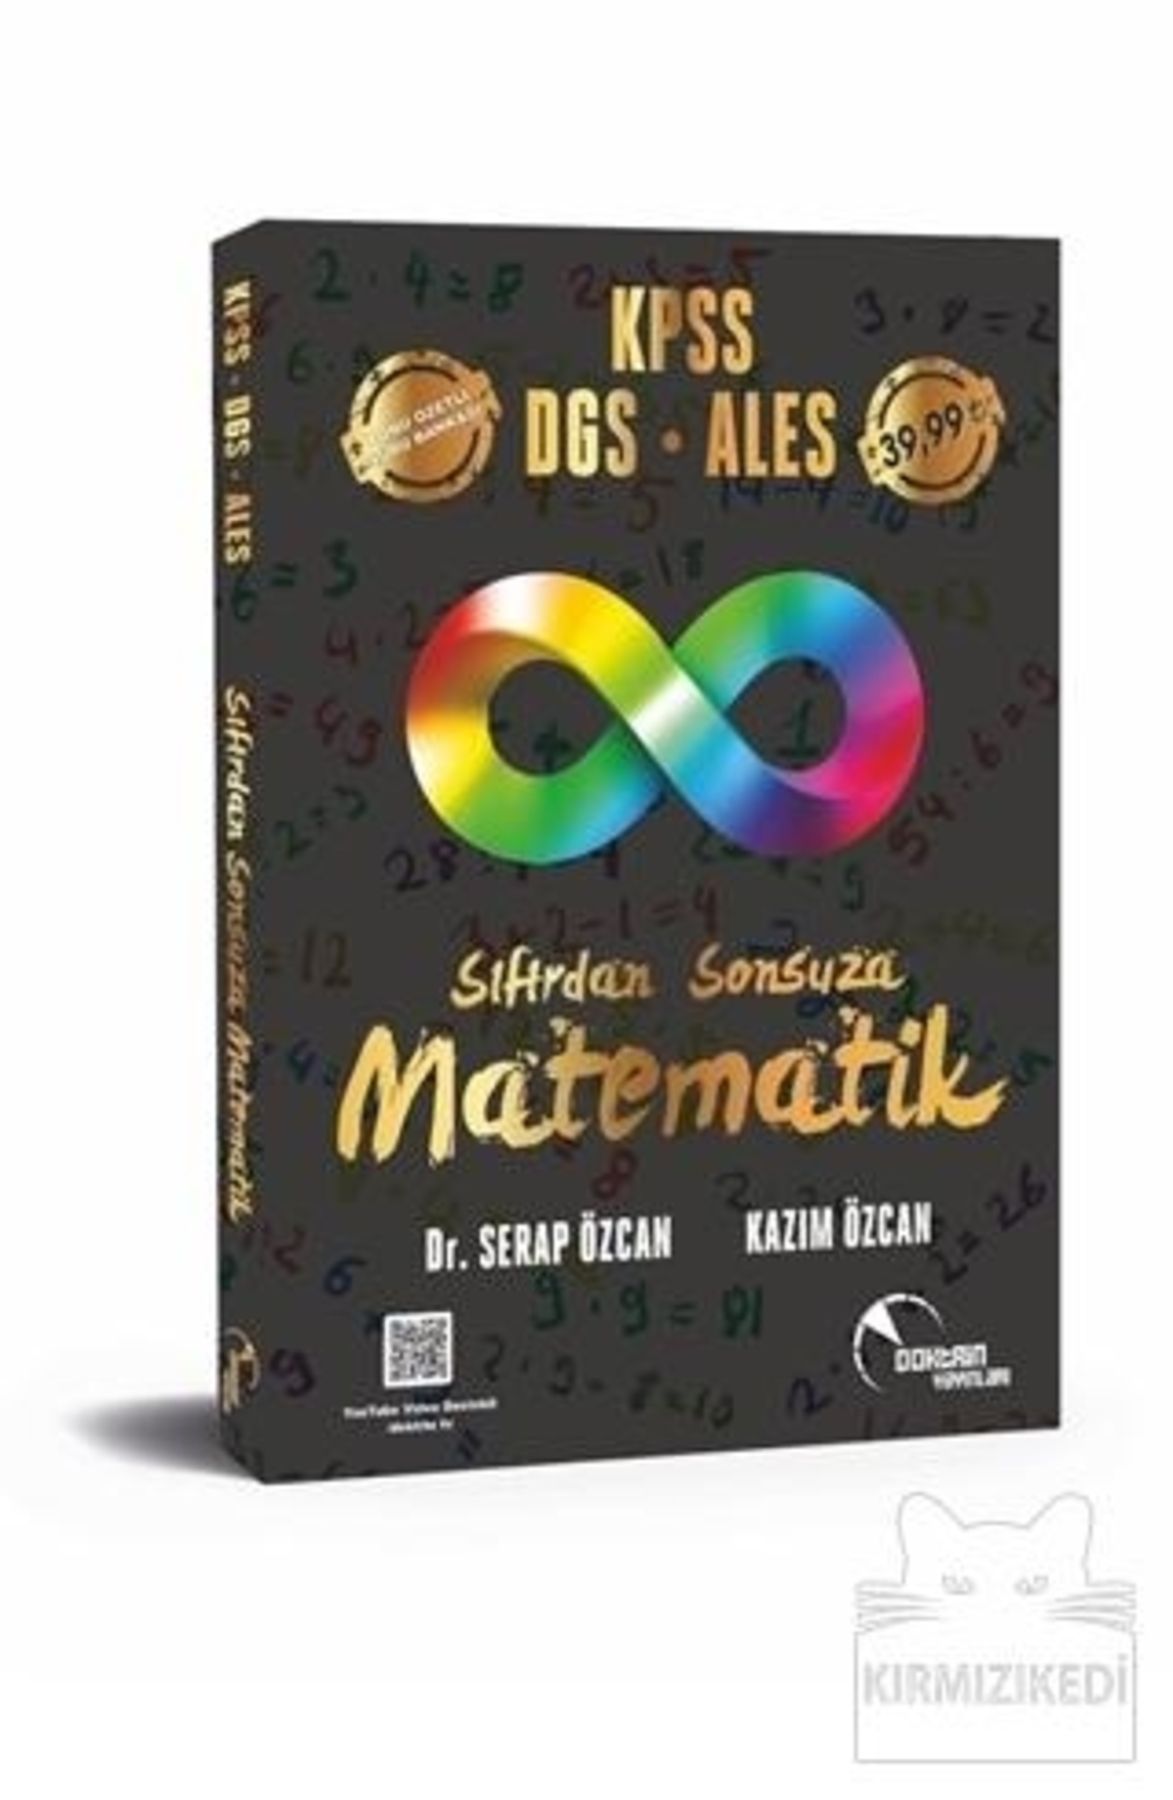 Doktrin Yayınları Sıfırdan Sonsuza Matematik Kpss-dgs-ales